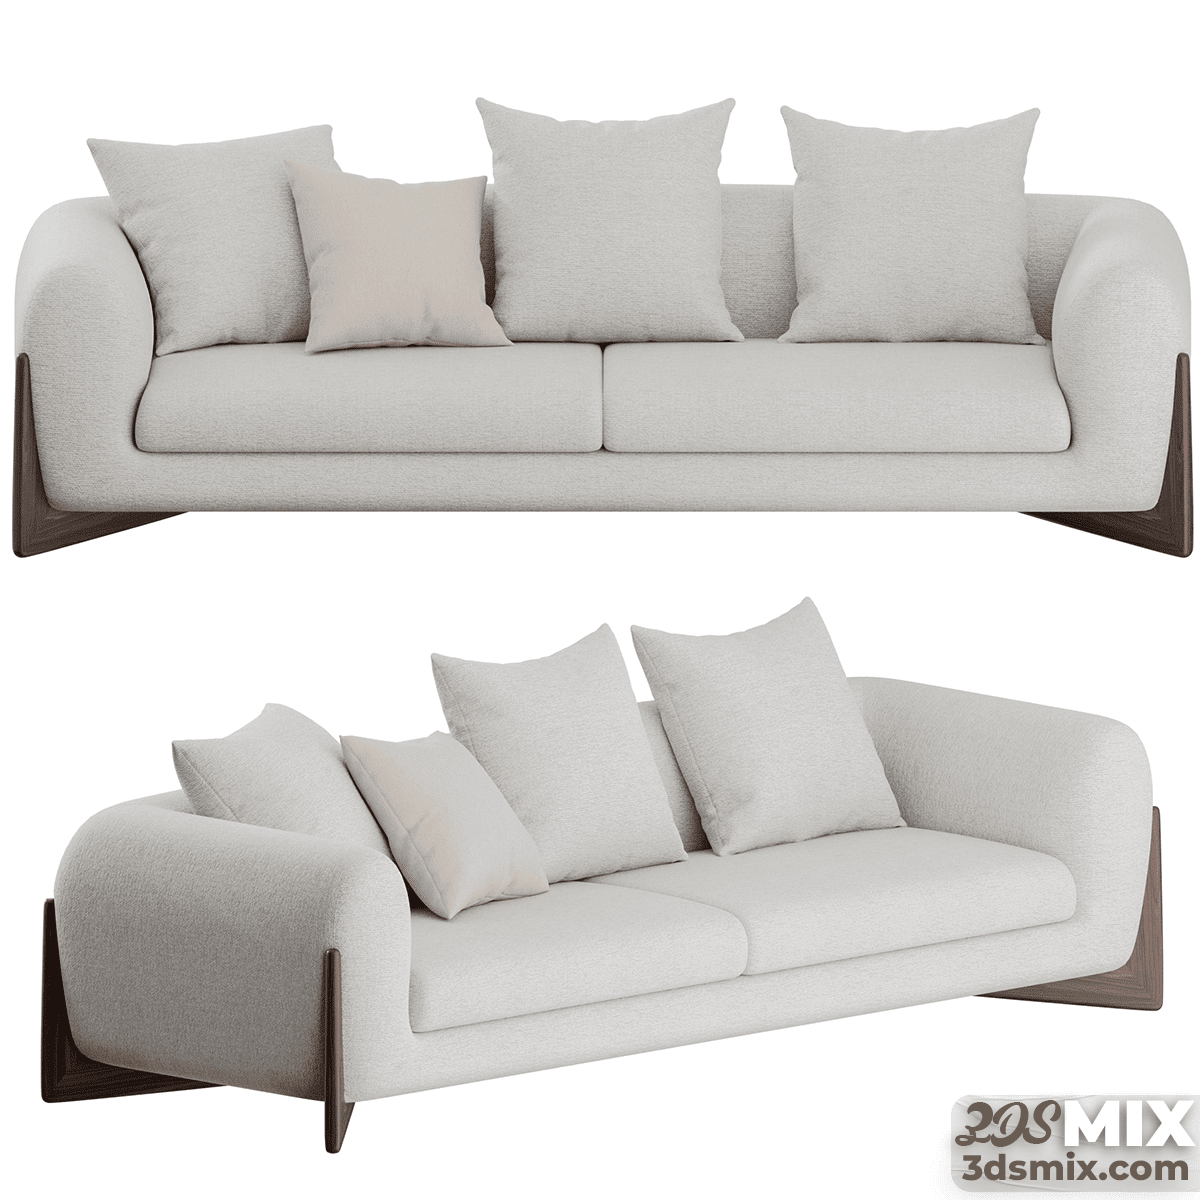 Softbay Sofa Model by Porada